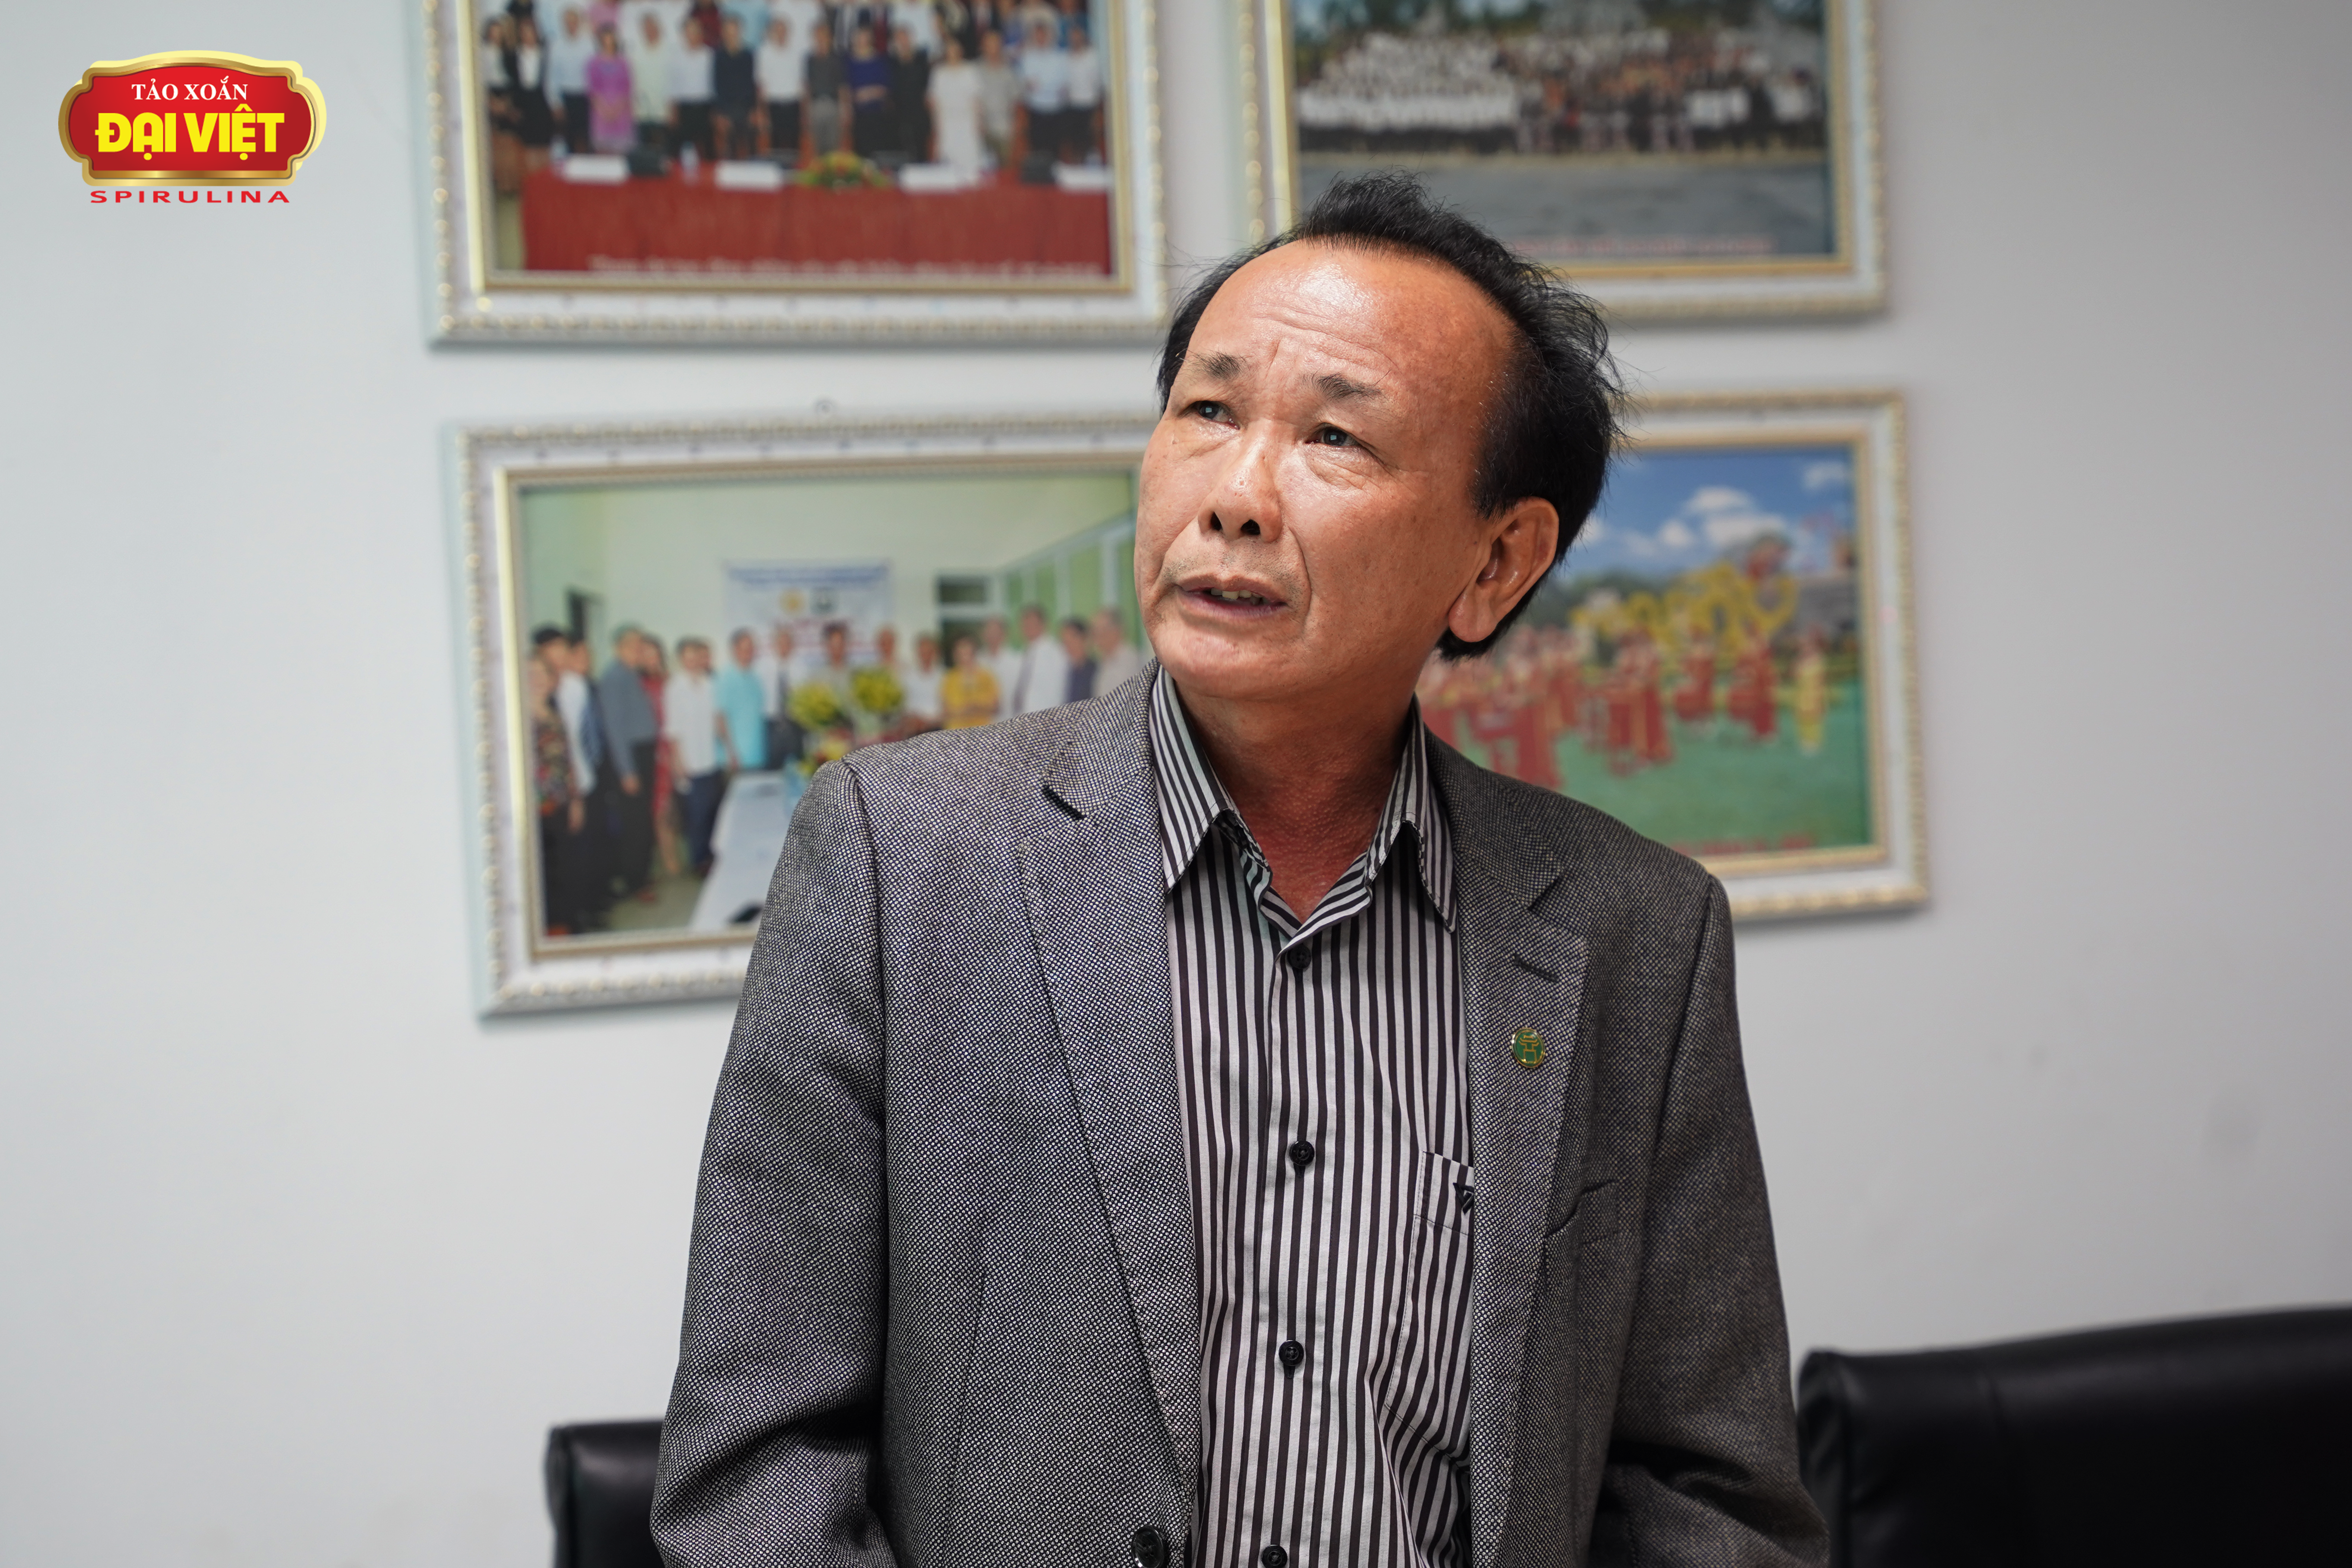 Ông Ngô Quốc Luật thay mặt Tập đoàn Tảo xoắn Đại Việt trình bày về công trình nghiên cứu của Đại Việt trước Hội đồng Khoa học công nghệ